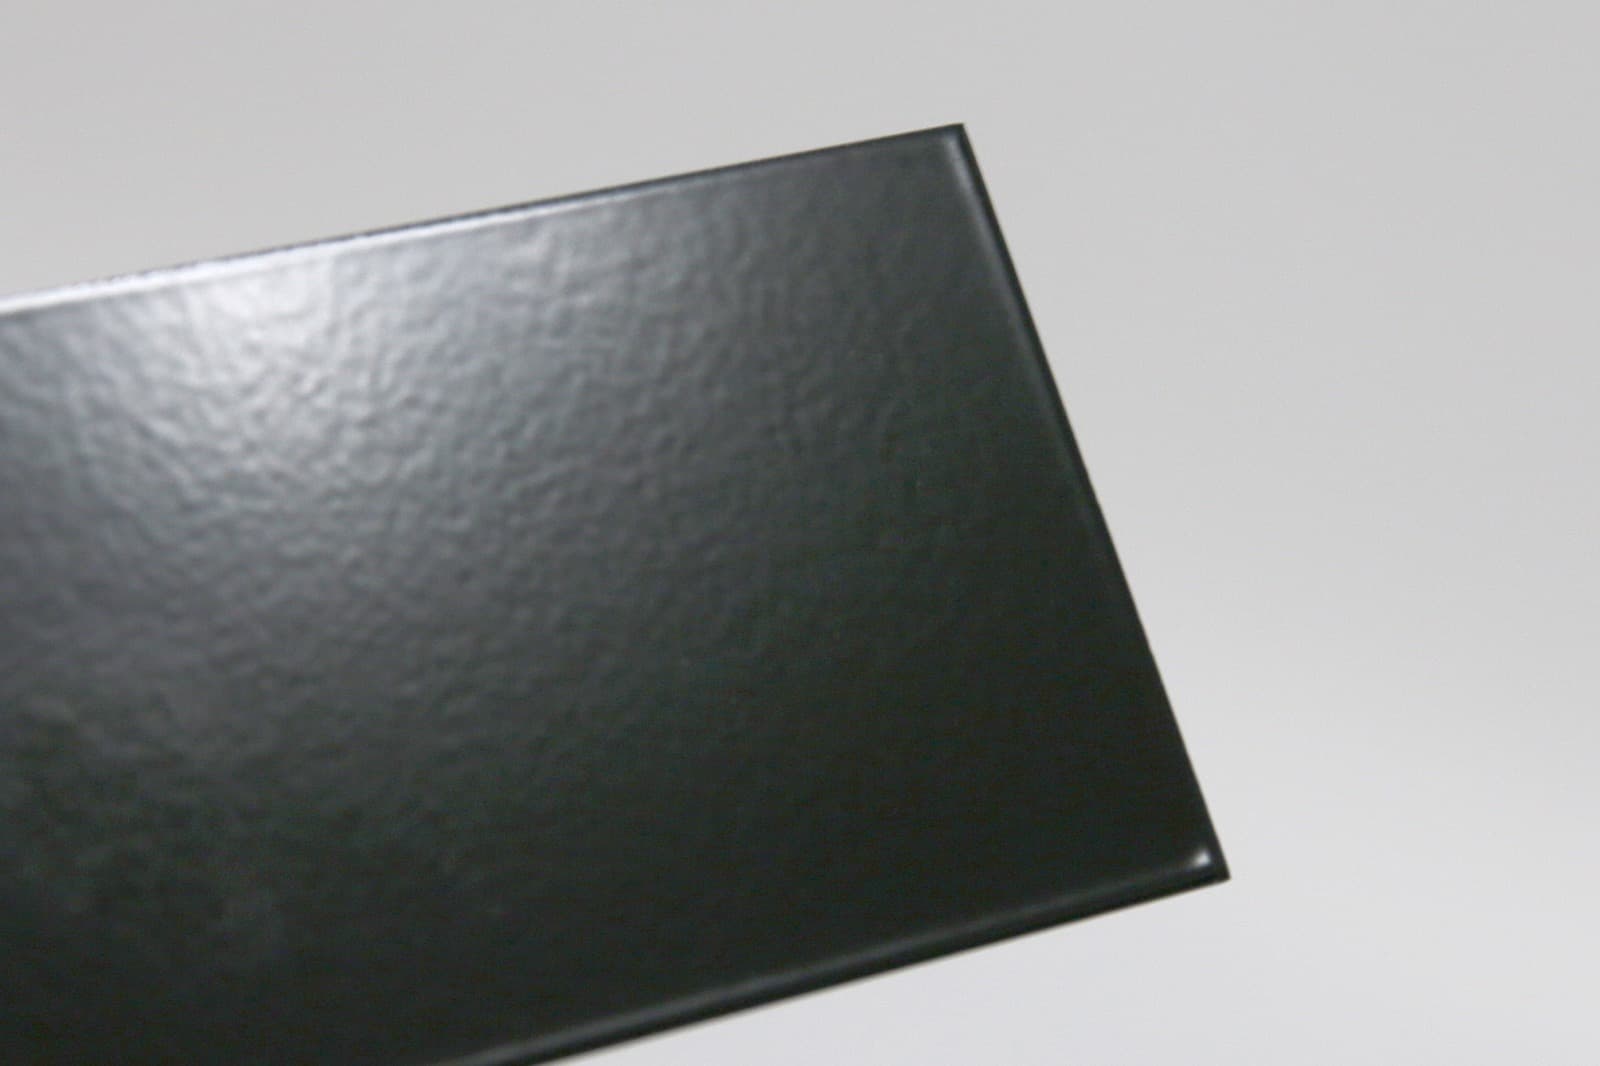 キューブ型レンジフード 照明なし W600×H600 ブラック KB-KC019-24-G162 質感見本。ツヤがあります